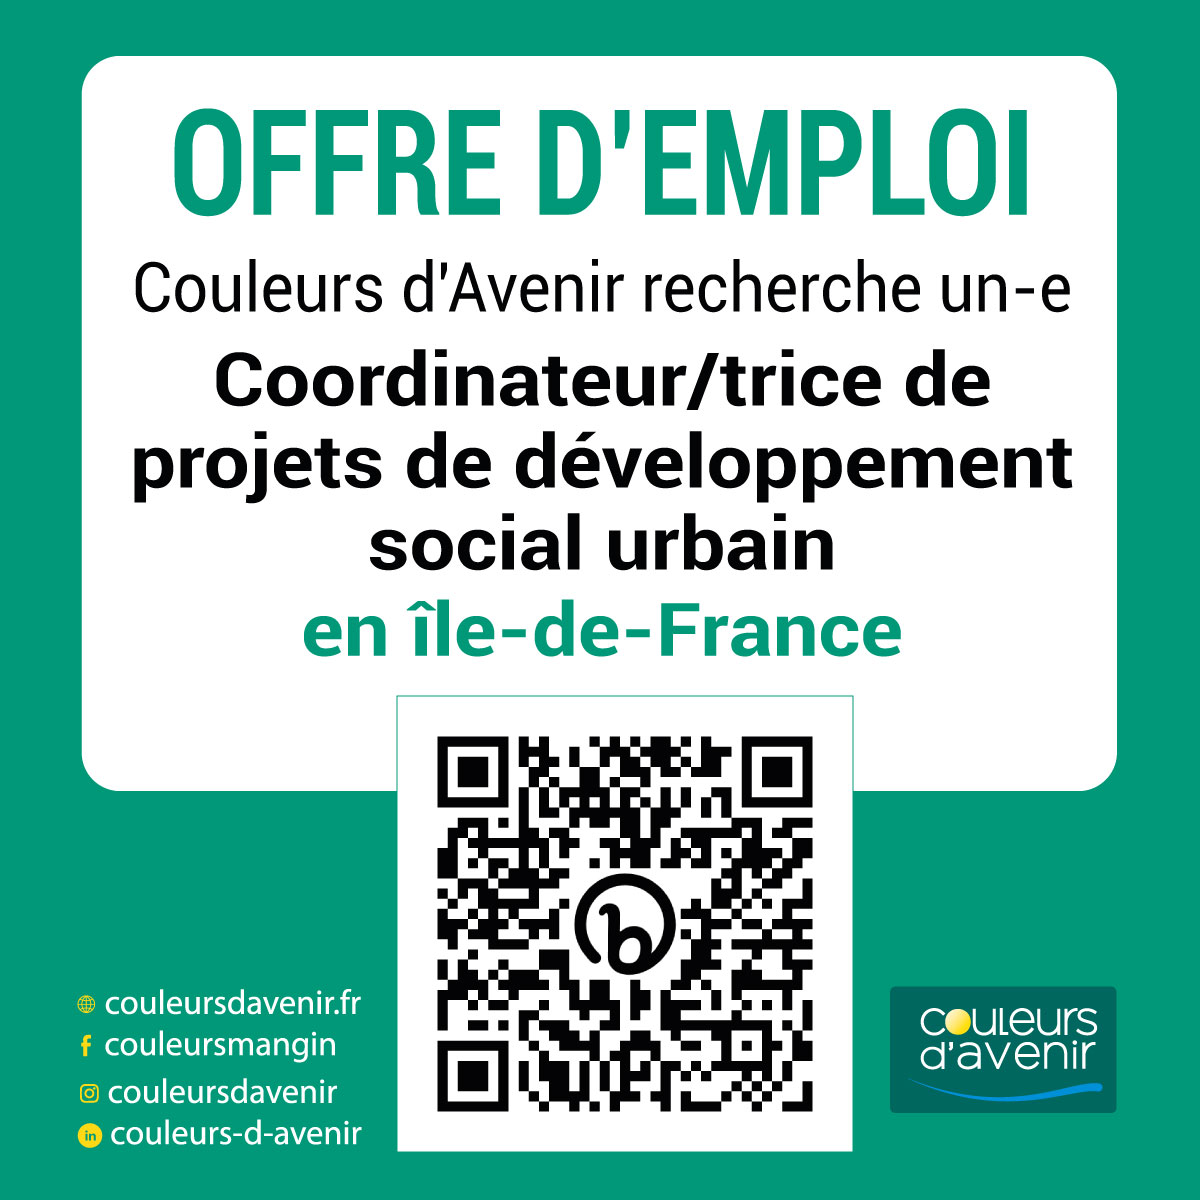 Coordinateur/trice de projets de développement social urbain en Île-de-France